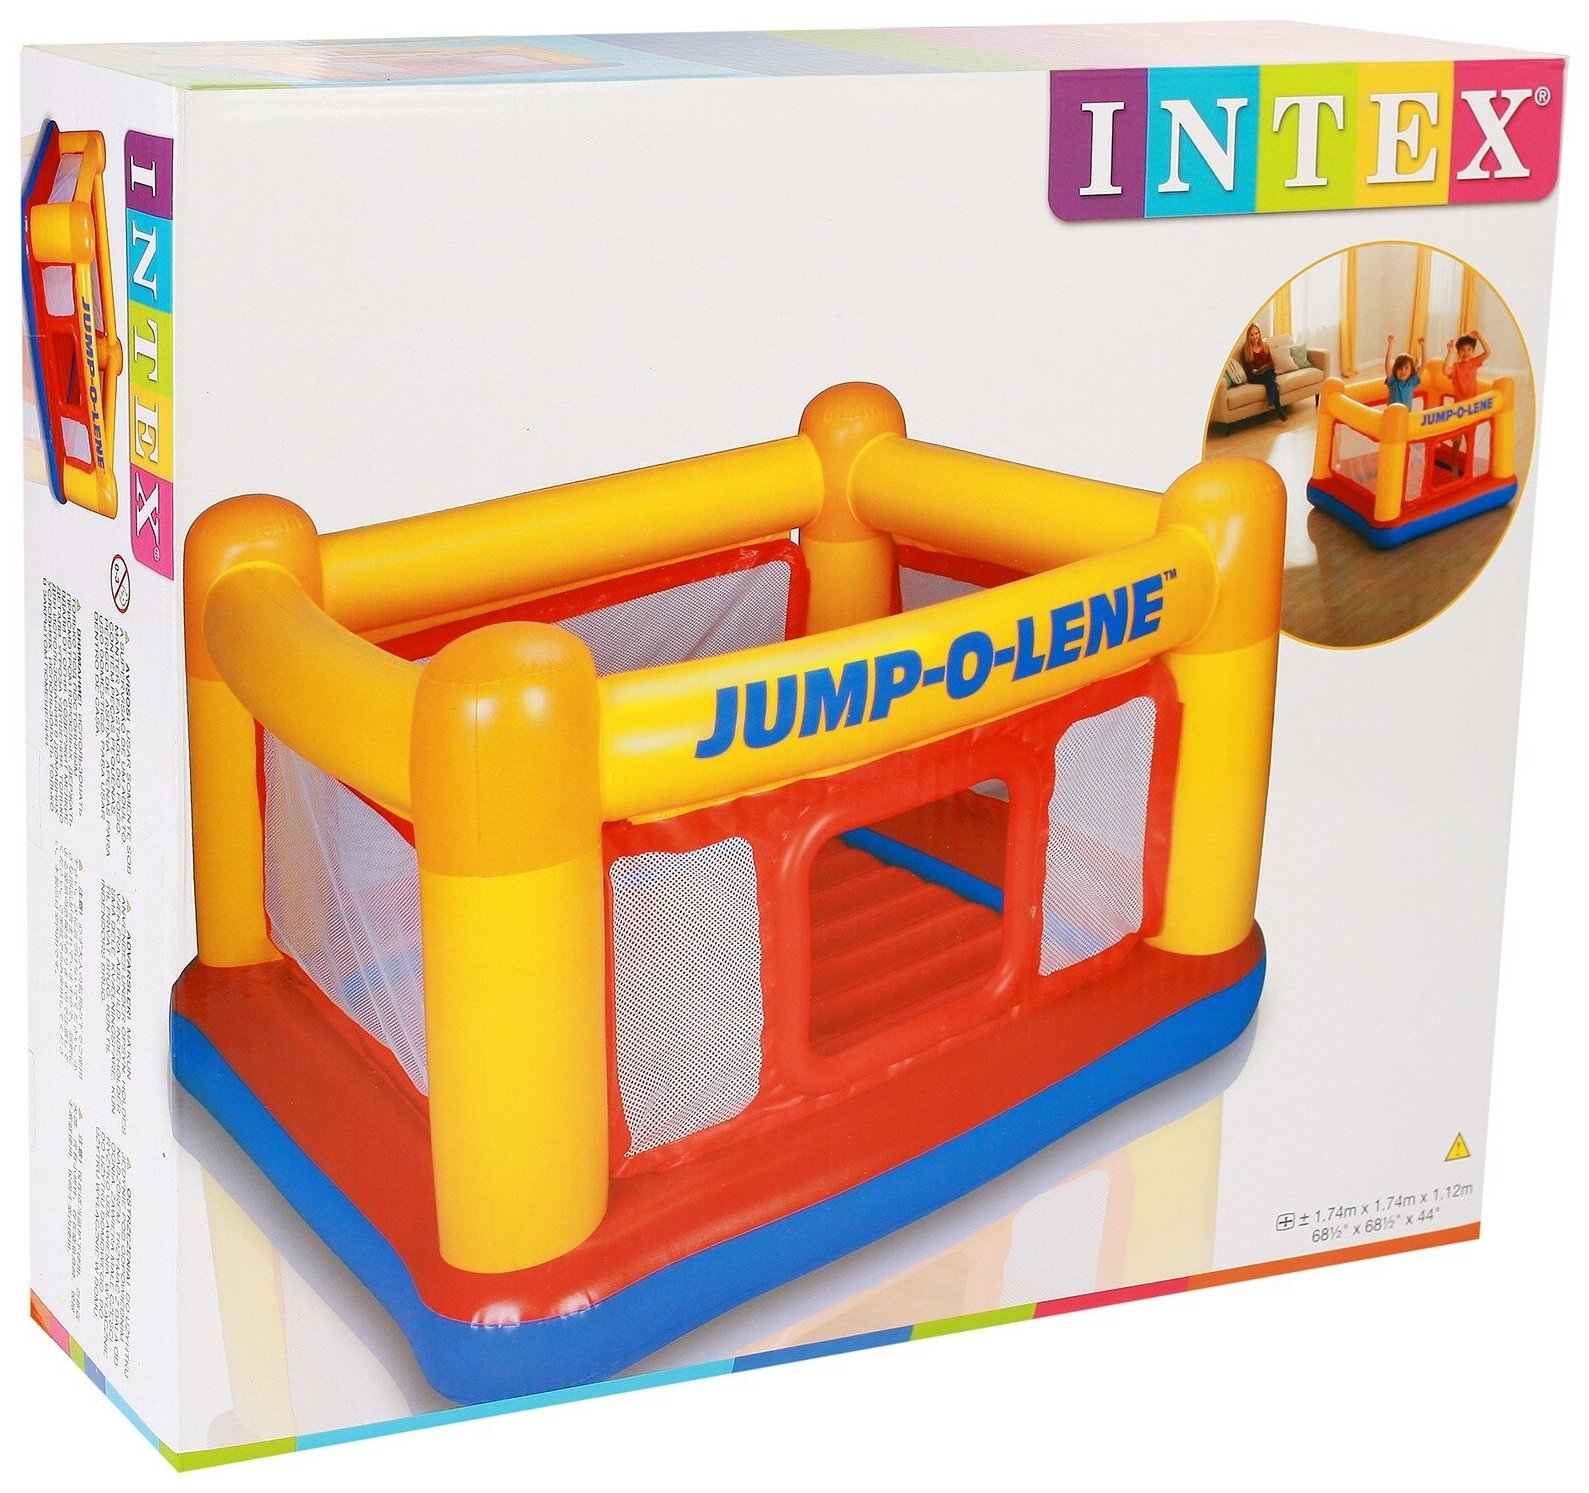 INTEX Надувной батут Jump-O-Lene 174*112 см 48260